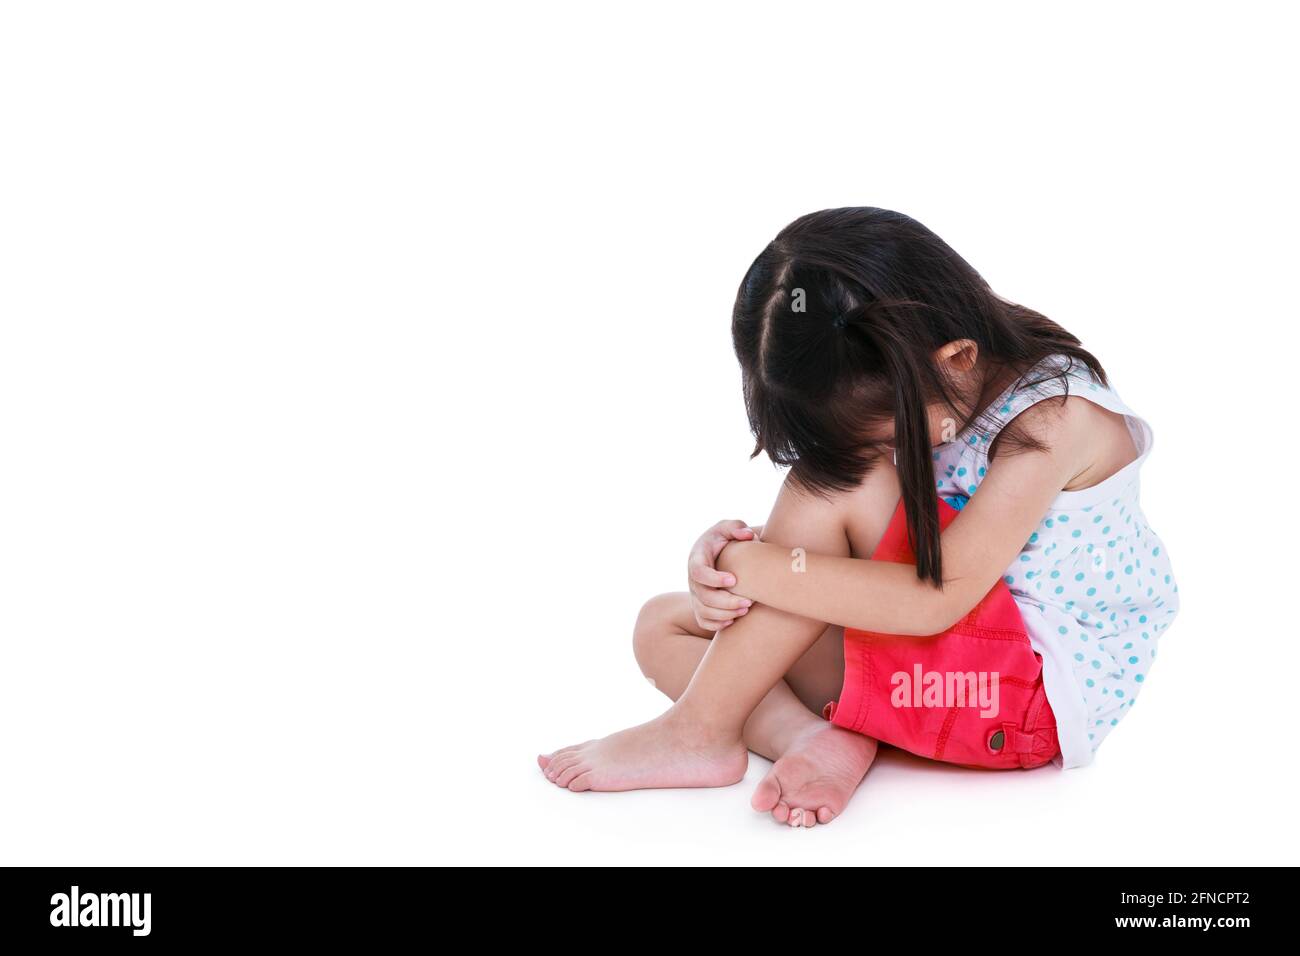 Traurigkeit asiatische Kind barfuß sitzen auf dem Boden mit Kopie Raum. Isoliert auf weißem Hintergrund. Negative menschliche Emotionen. Konzeptionell über Kinder, die la Stockfoto